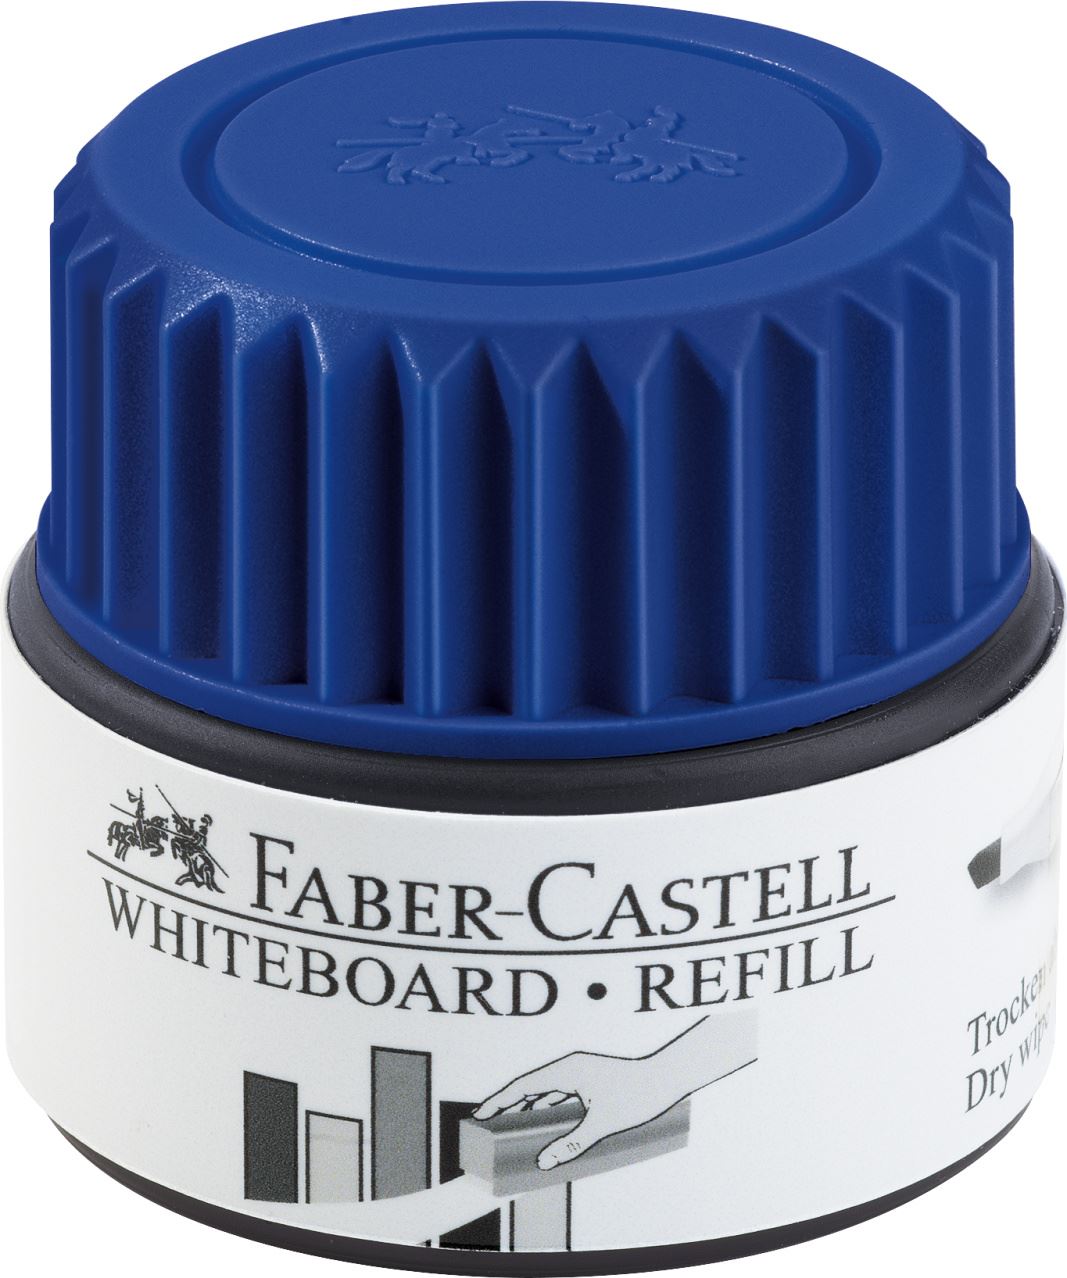 Faber-Castell - Encrier recharge tableau blanc 1584 bleu